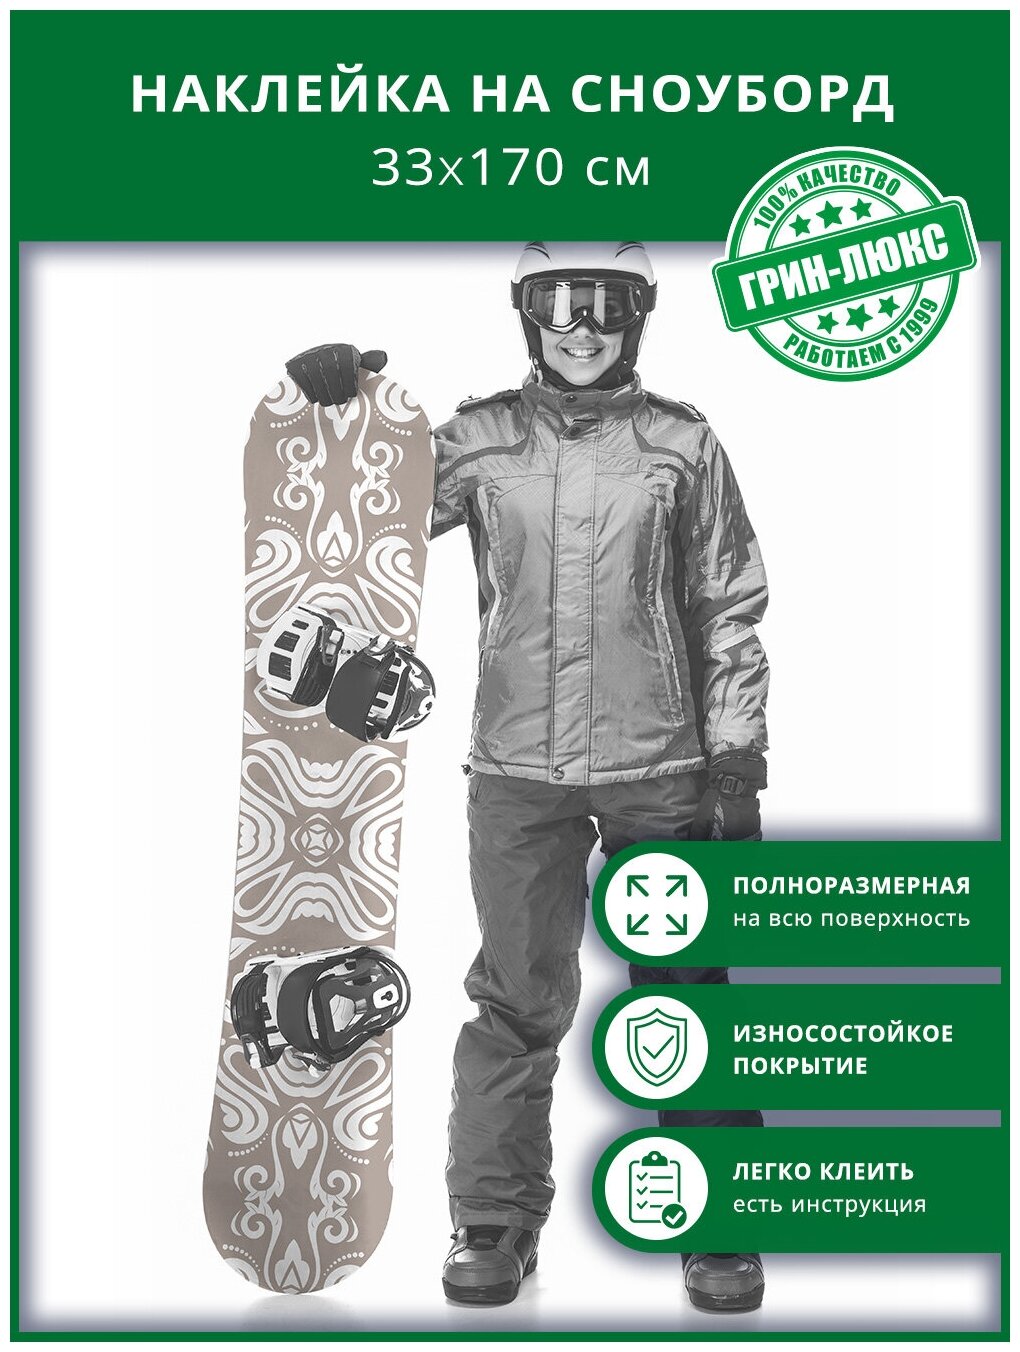 Наклейка на сноуборд с защитным глянцевым покрытием 33х170 см "Зимний узор"